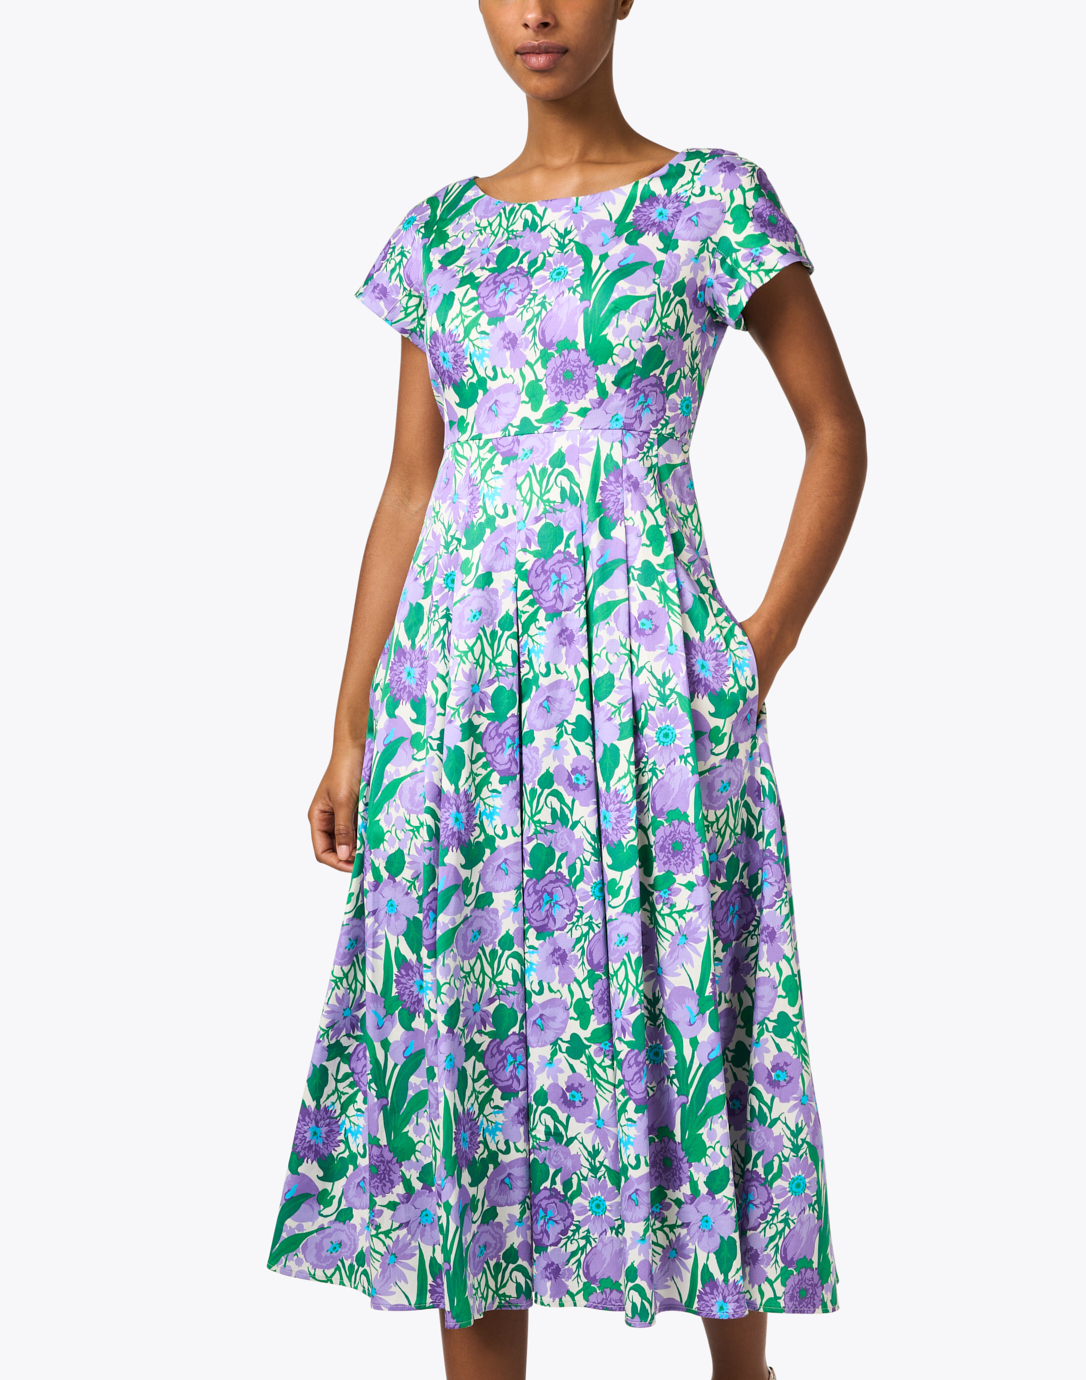 Viaggio Purple and Green Floral Cotton Dress